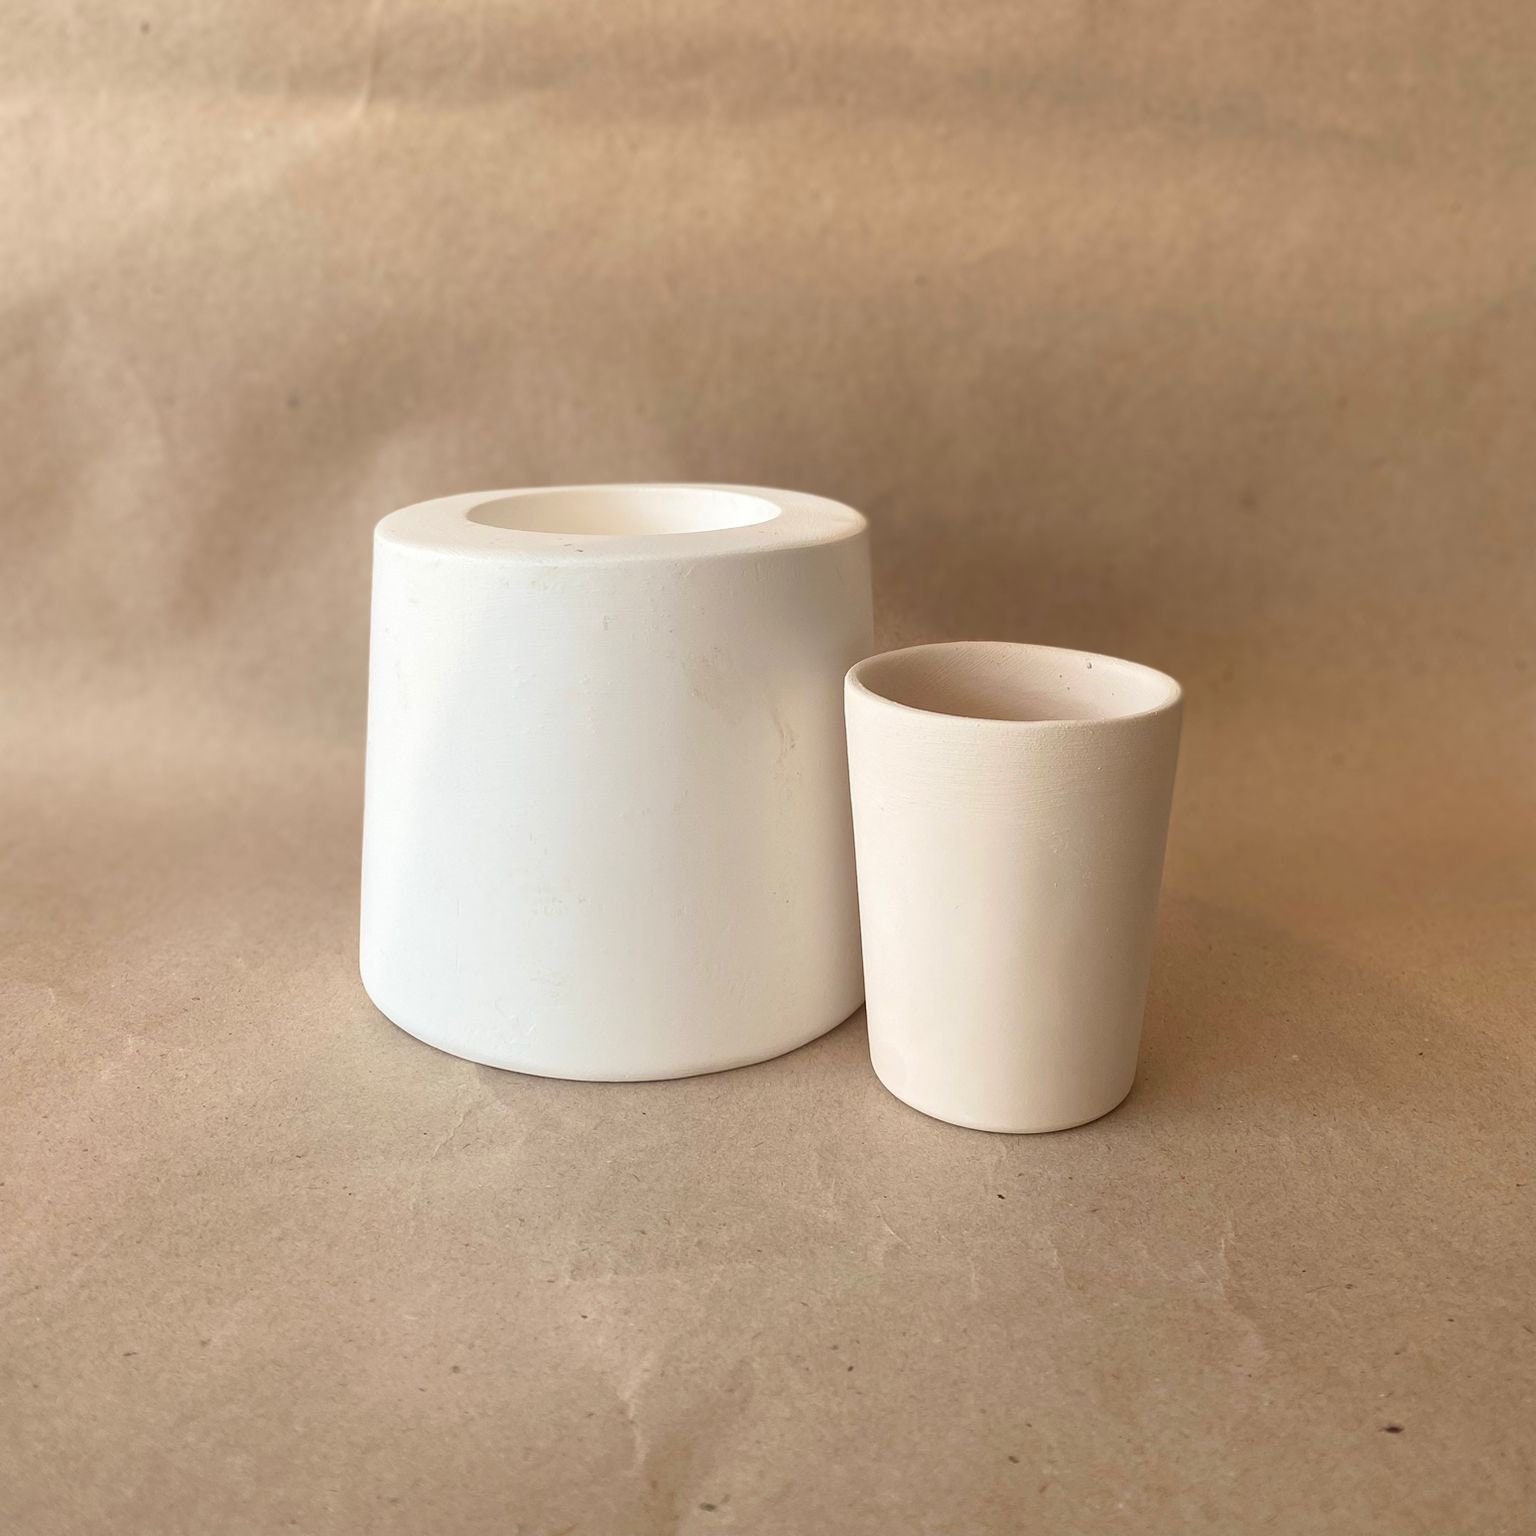 EK021 HANDLELESS MUG PLASTER MOLD for SLIP CASTING – Eti Ceramic Store